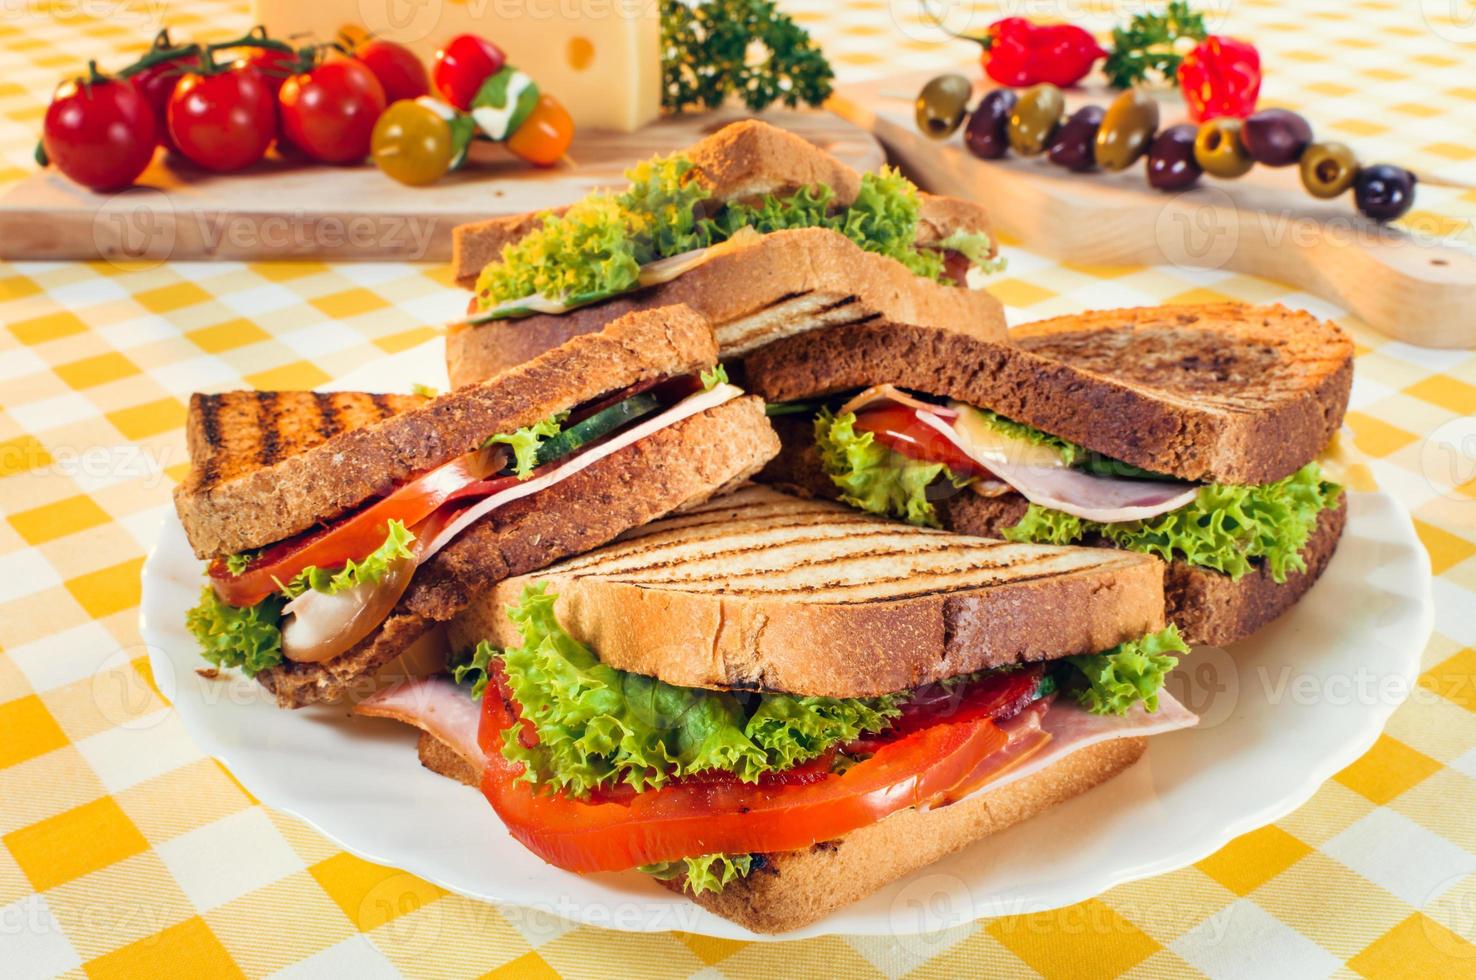 sándwich club con jamón, salami, ternera ahumada, queso, lechuga y rúcula.Preparación de sándwich tostado. foto